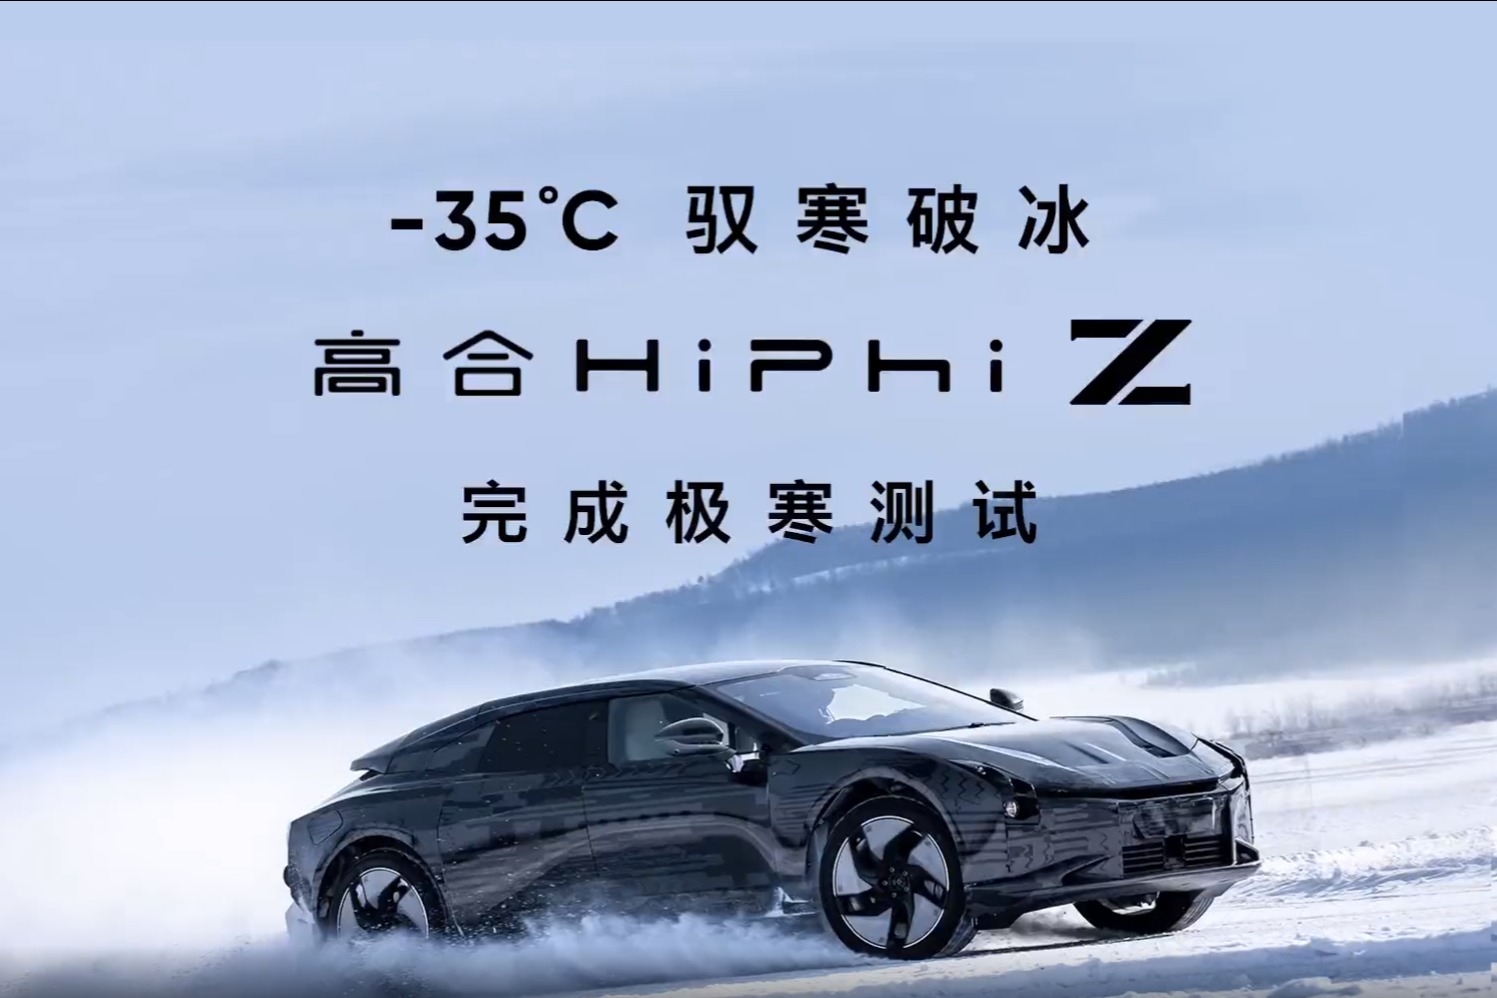 高合HiPhi Z完成-35℃极寒测试  北京车展亮相